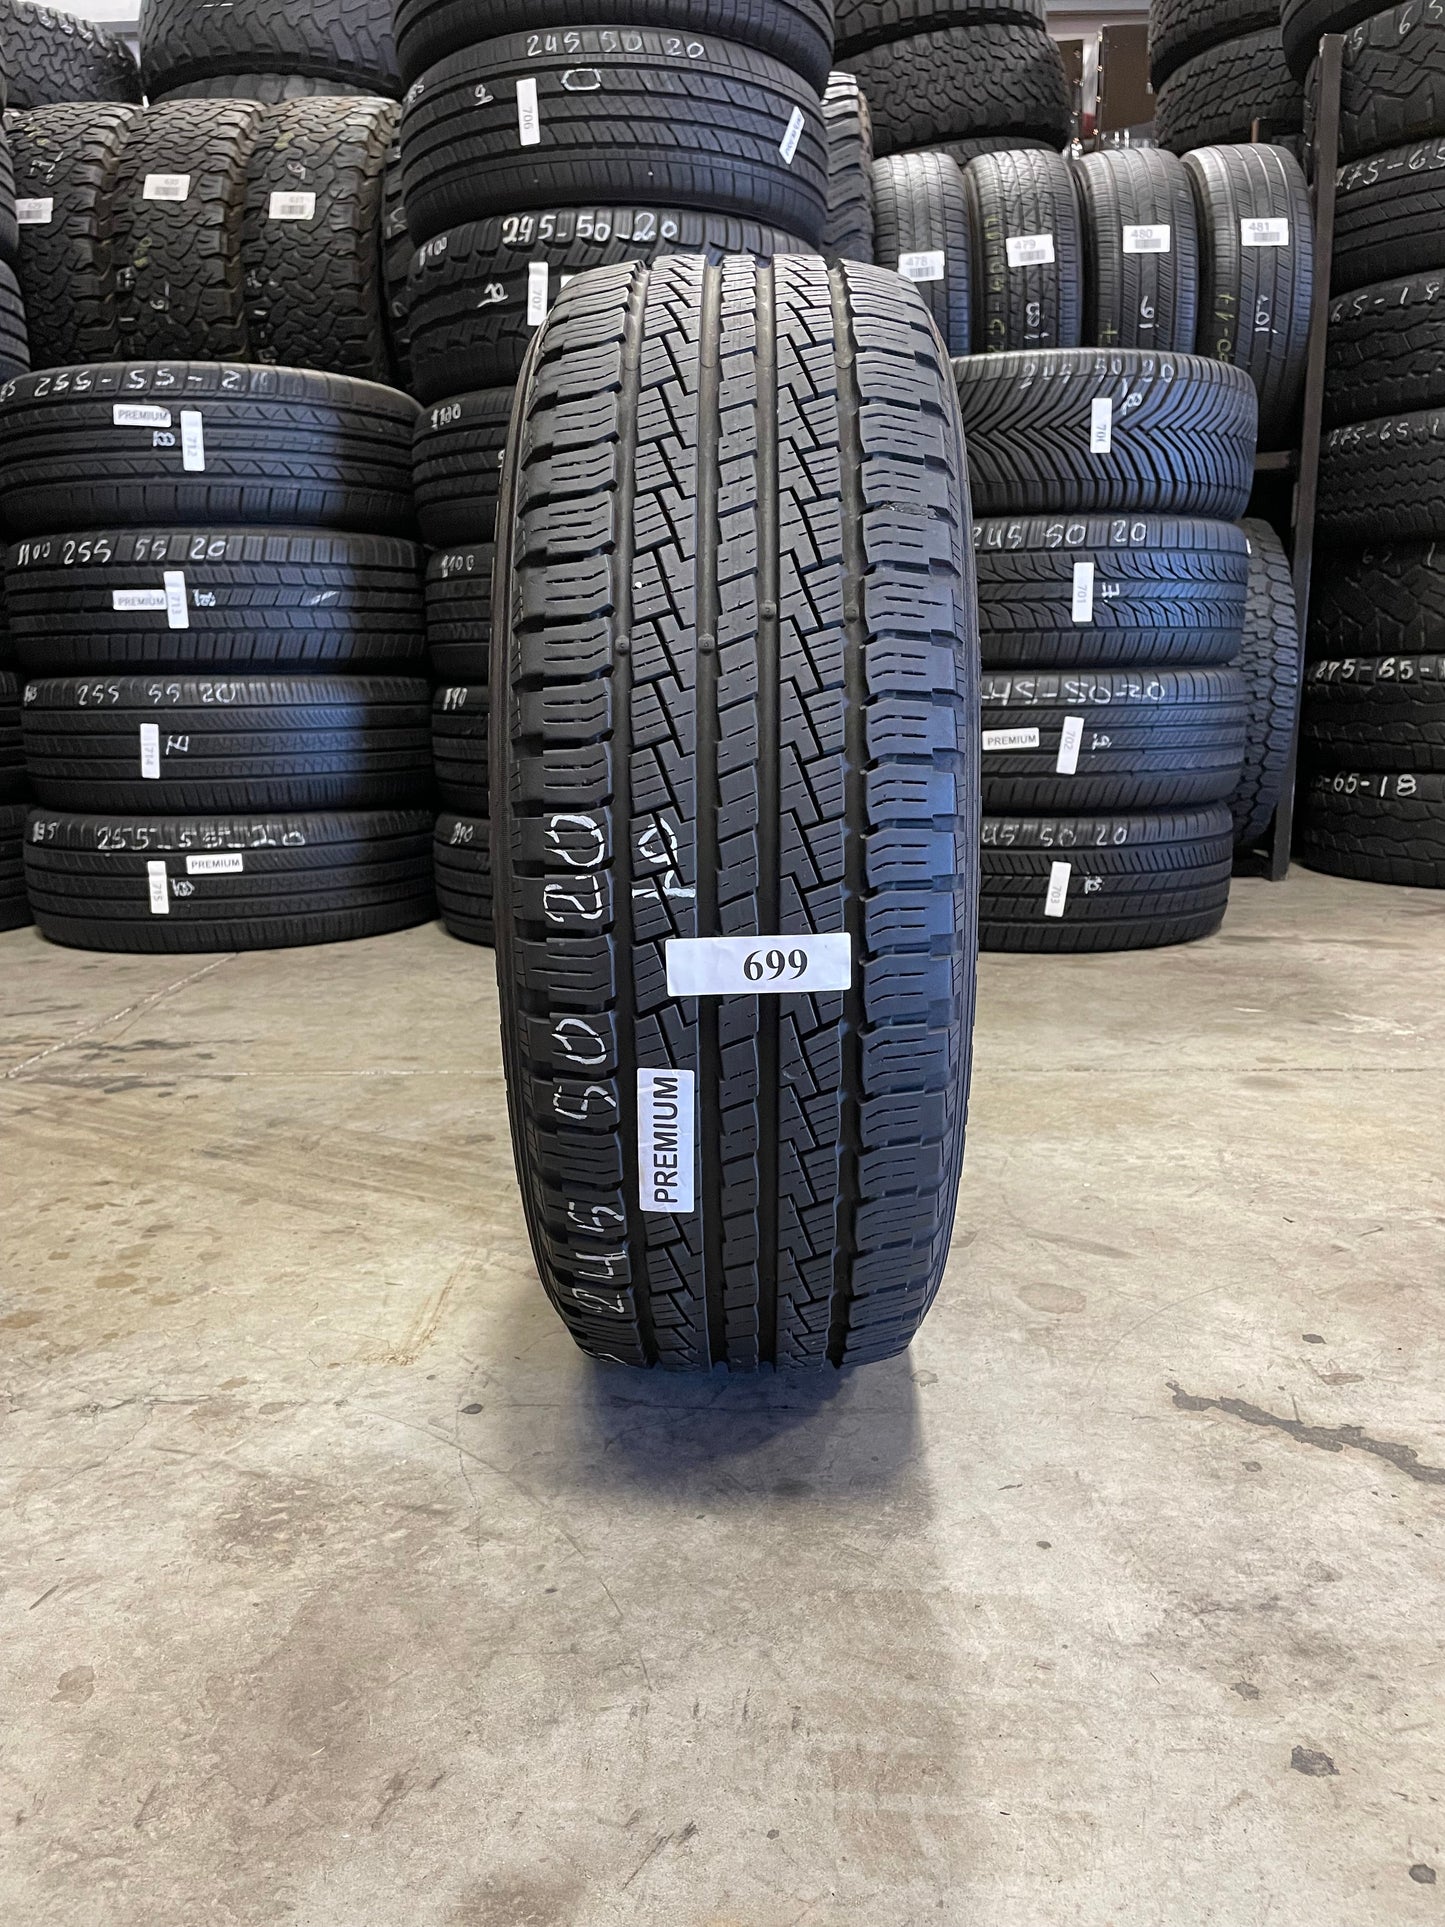 SINGLE 245/50R20 Pirelli Scorpion STR 102 H SL - Premium Used Tires